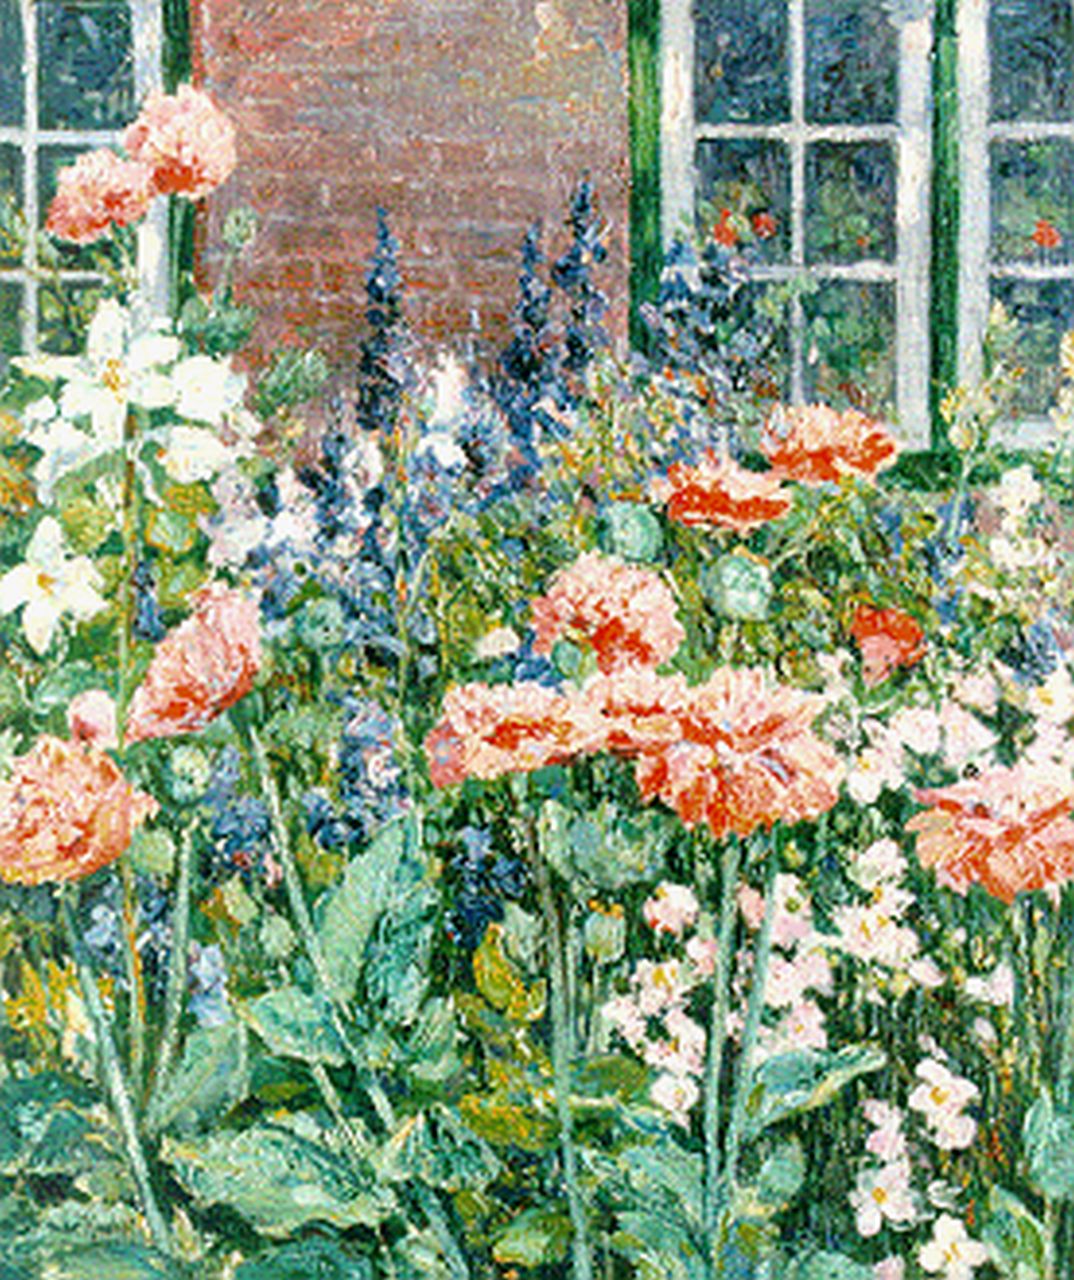 Kuchel M.  | Max Kuchel, Flower garden, Öl auf Leinwand 49,2 x 42,0 cm, signed l.l. und painted circa 1910